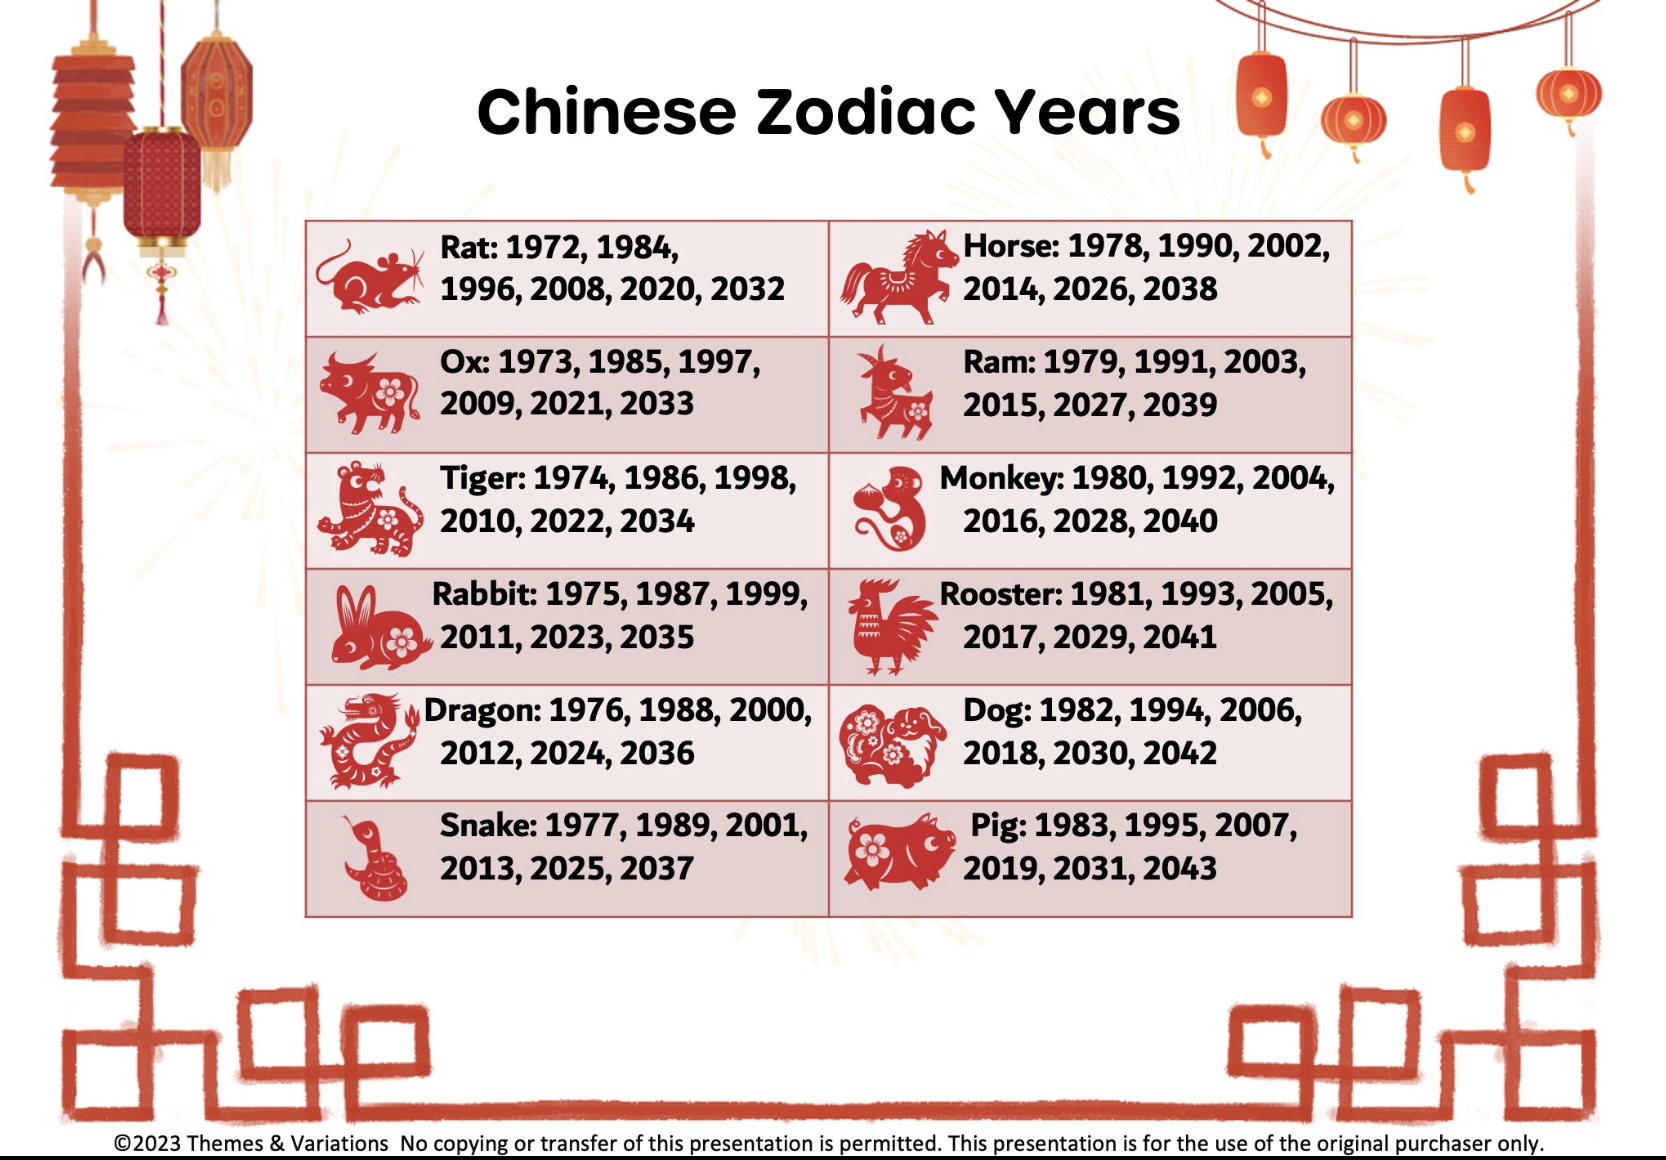 Chinese Zodiac years and animals